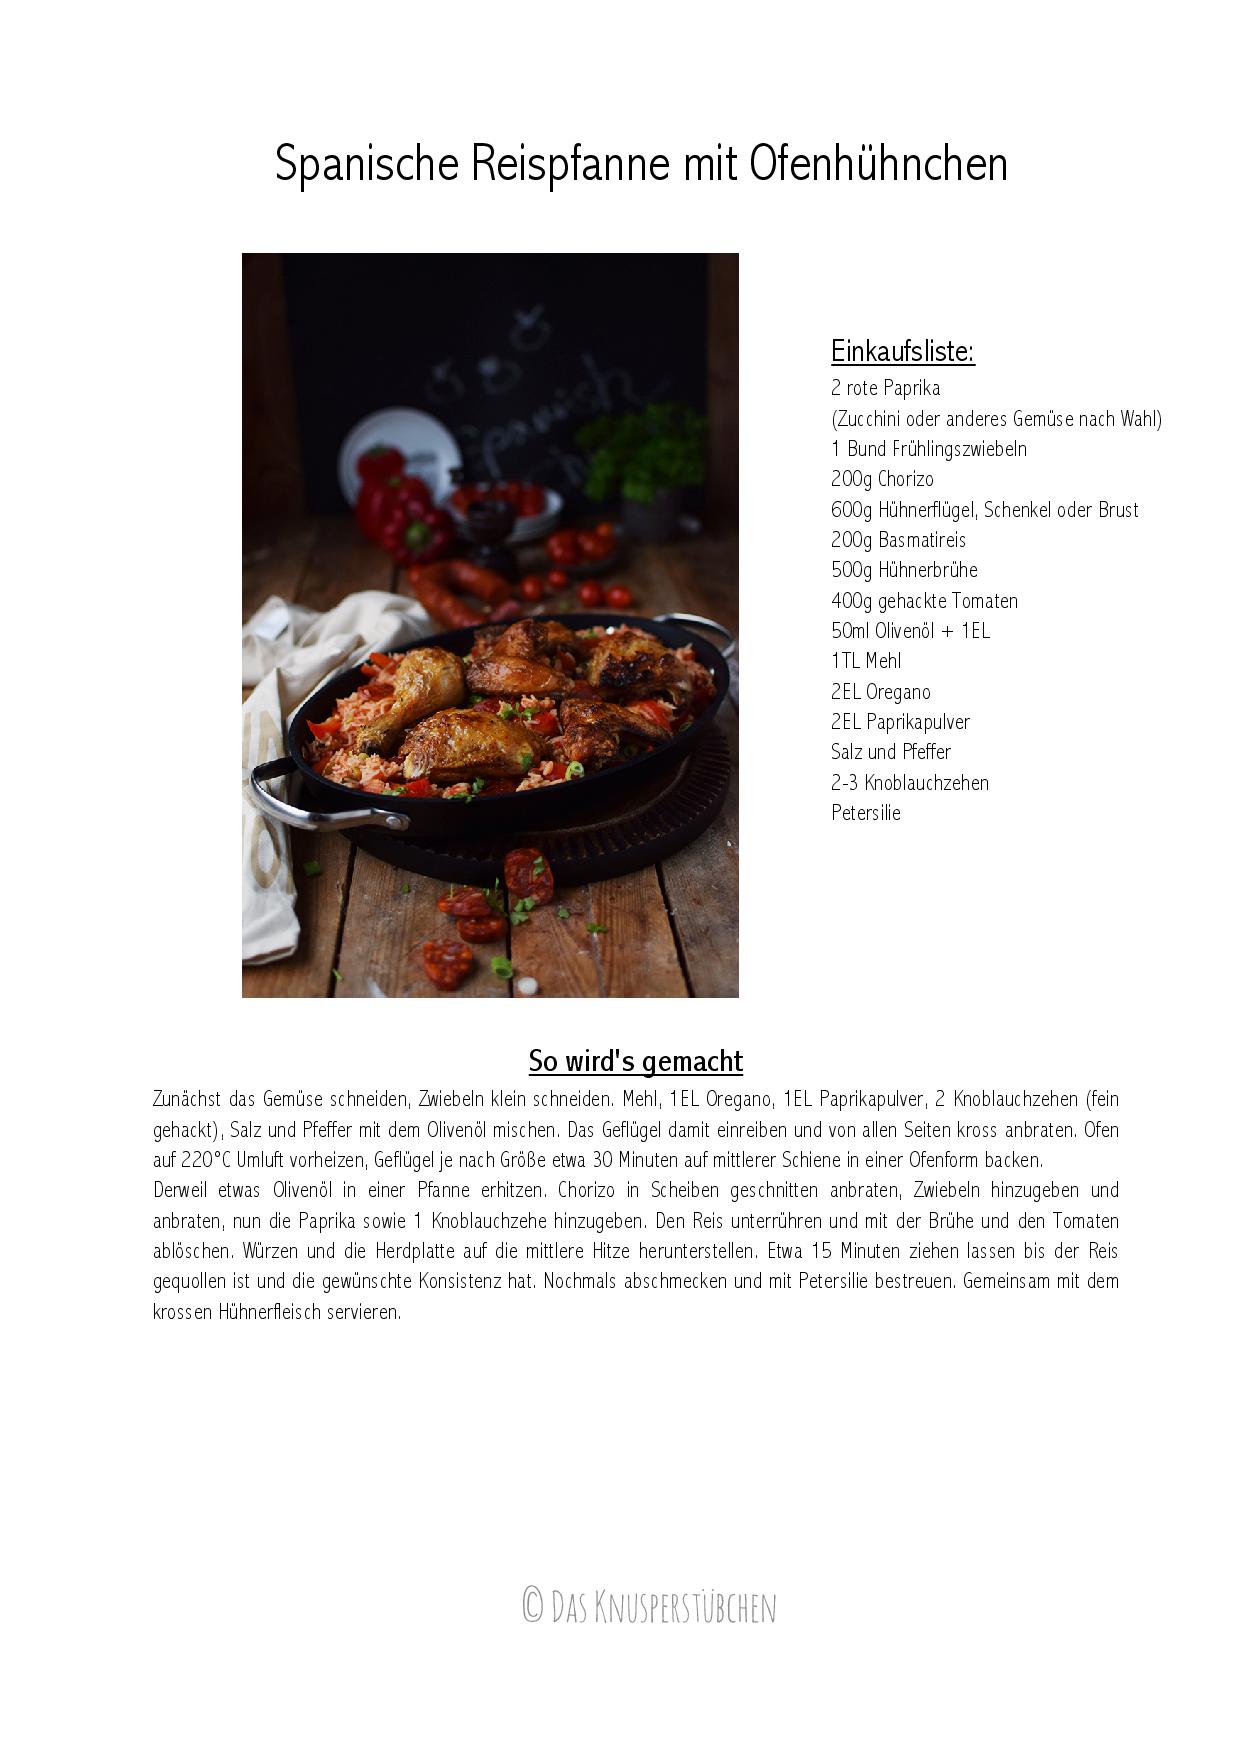 Spanish Chicken - Spanische Reispfanne-001